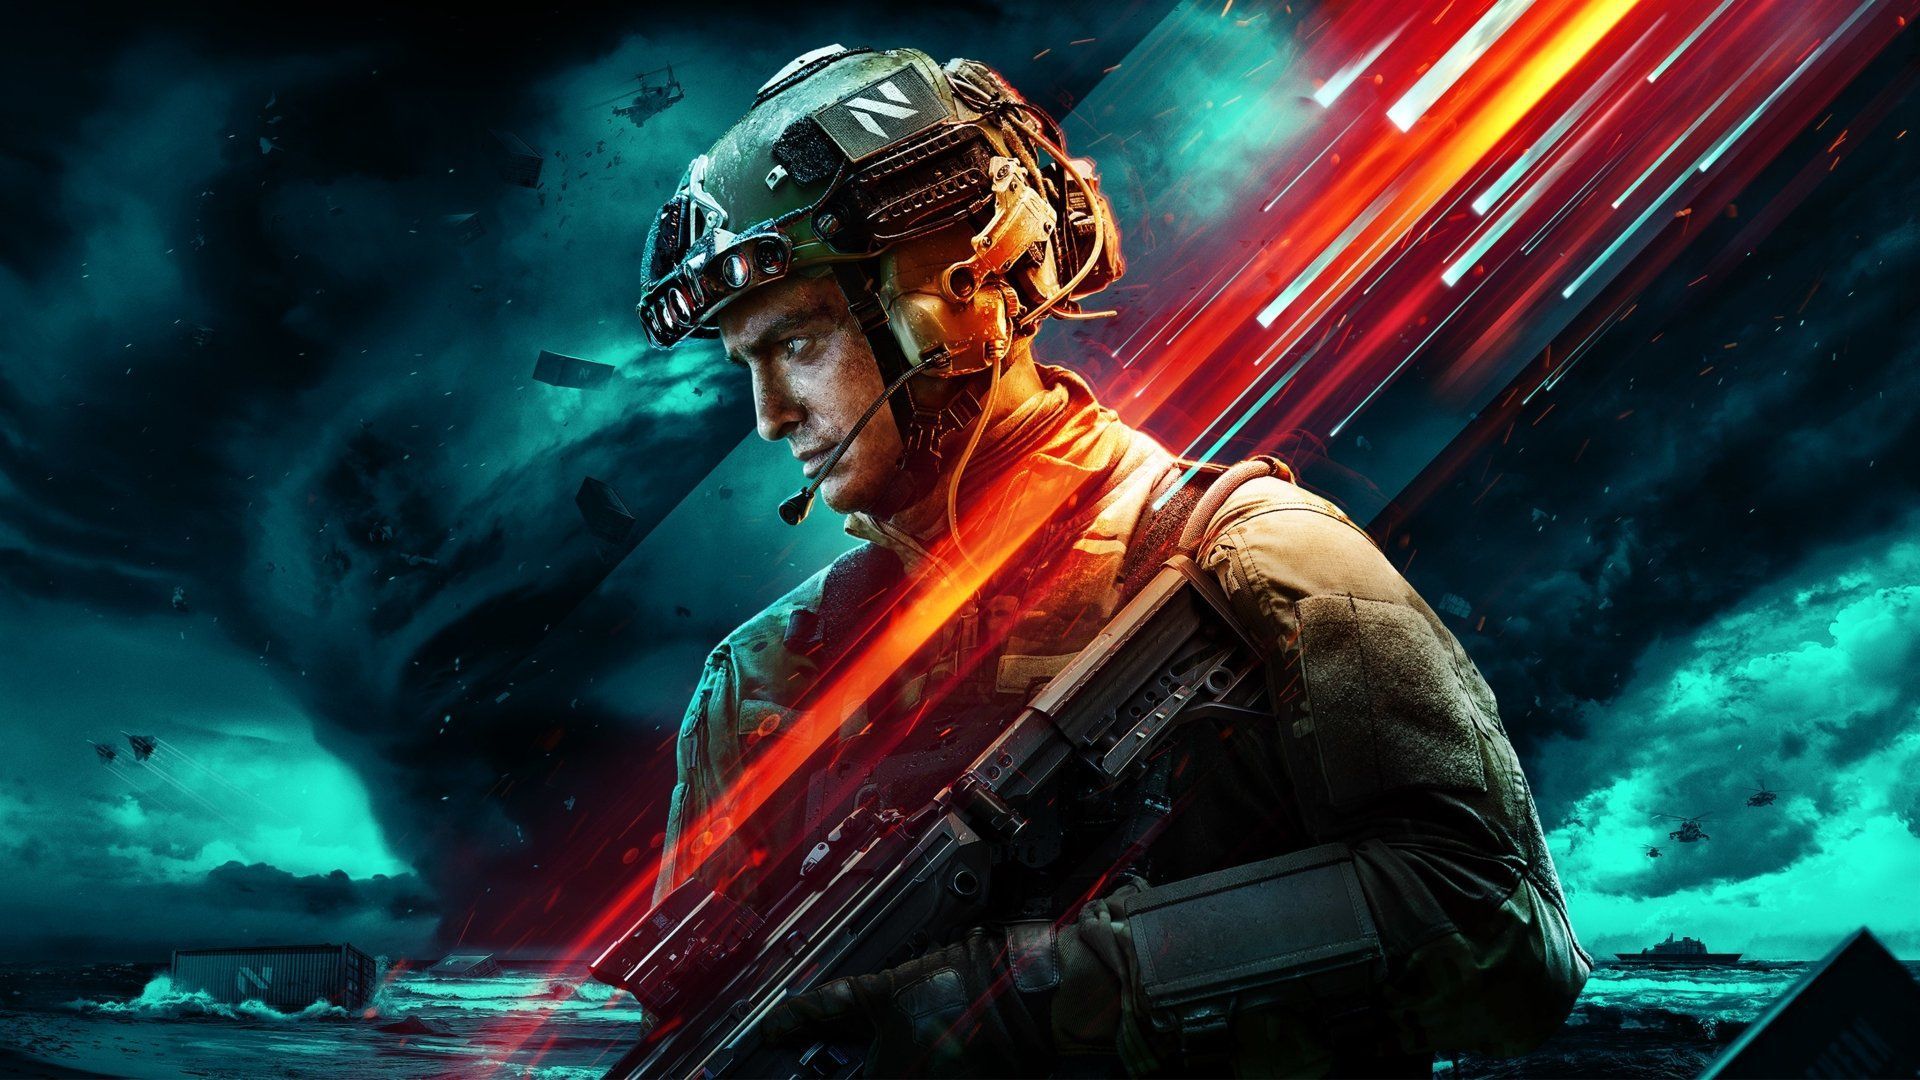 [MAJ] Battlefield 2042 - Le mode Hazard Zone dévoilé par EA et DICE - JVFrance